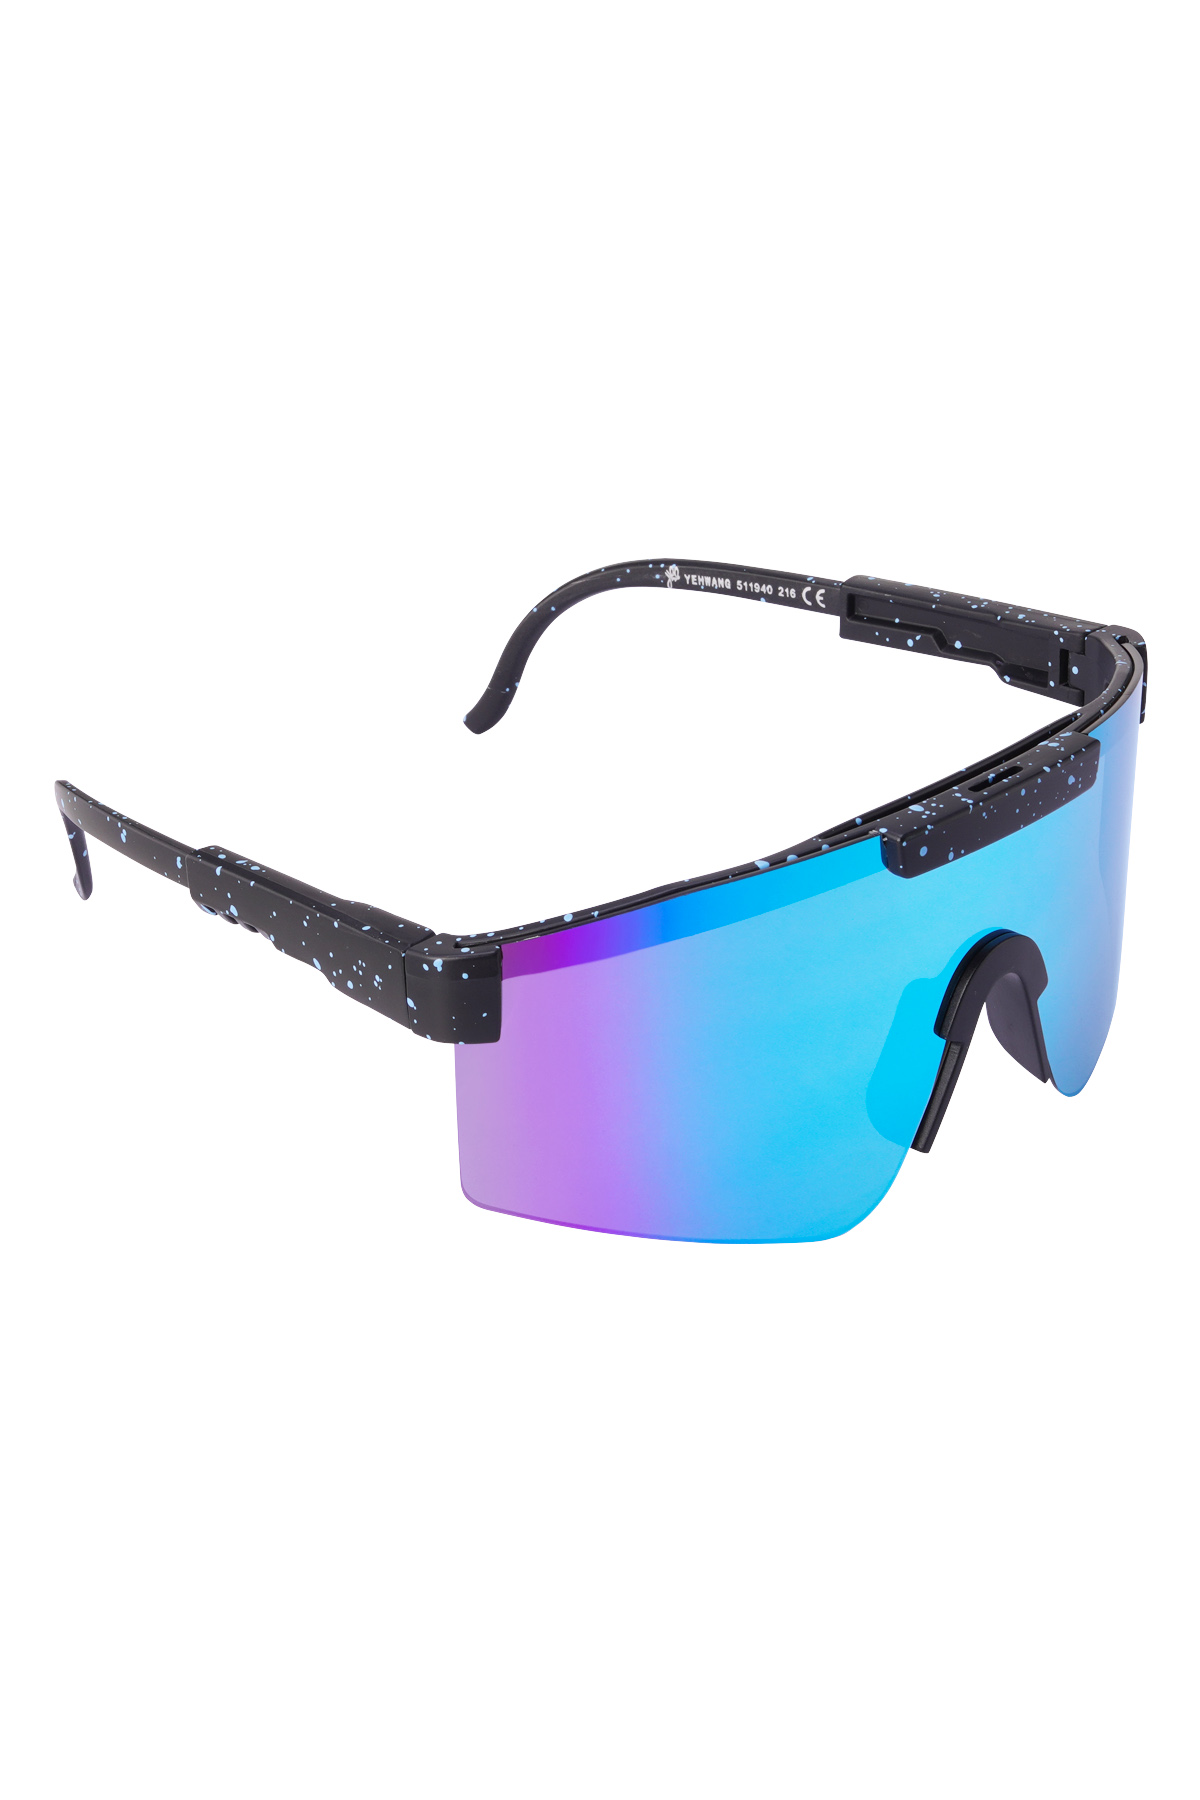 Gafas de sol con lentes de colores estampados - negro h5 